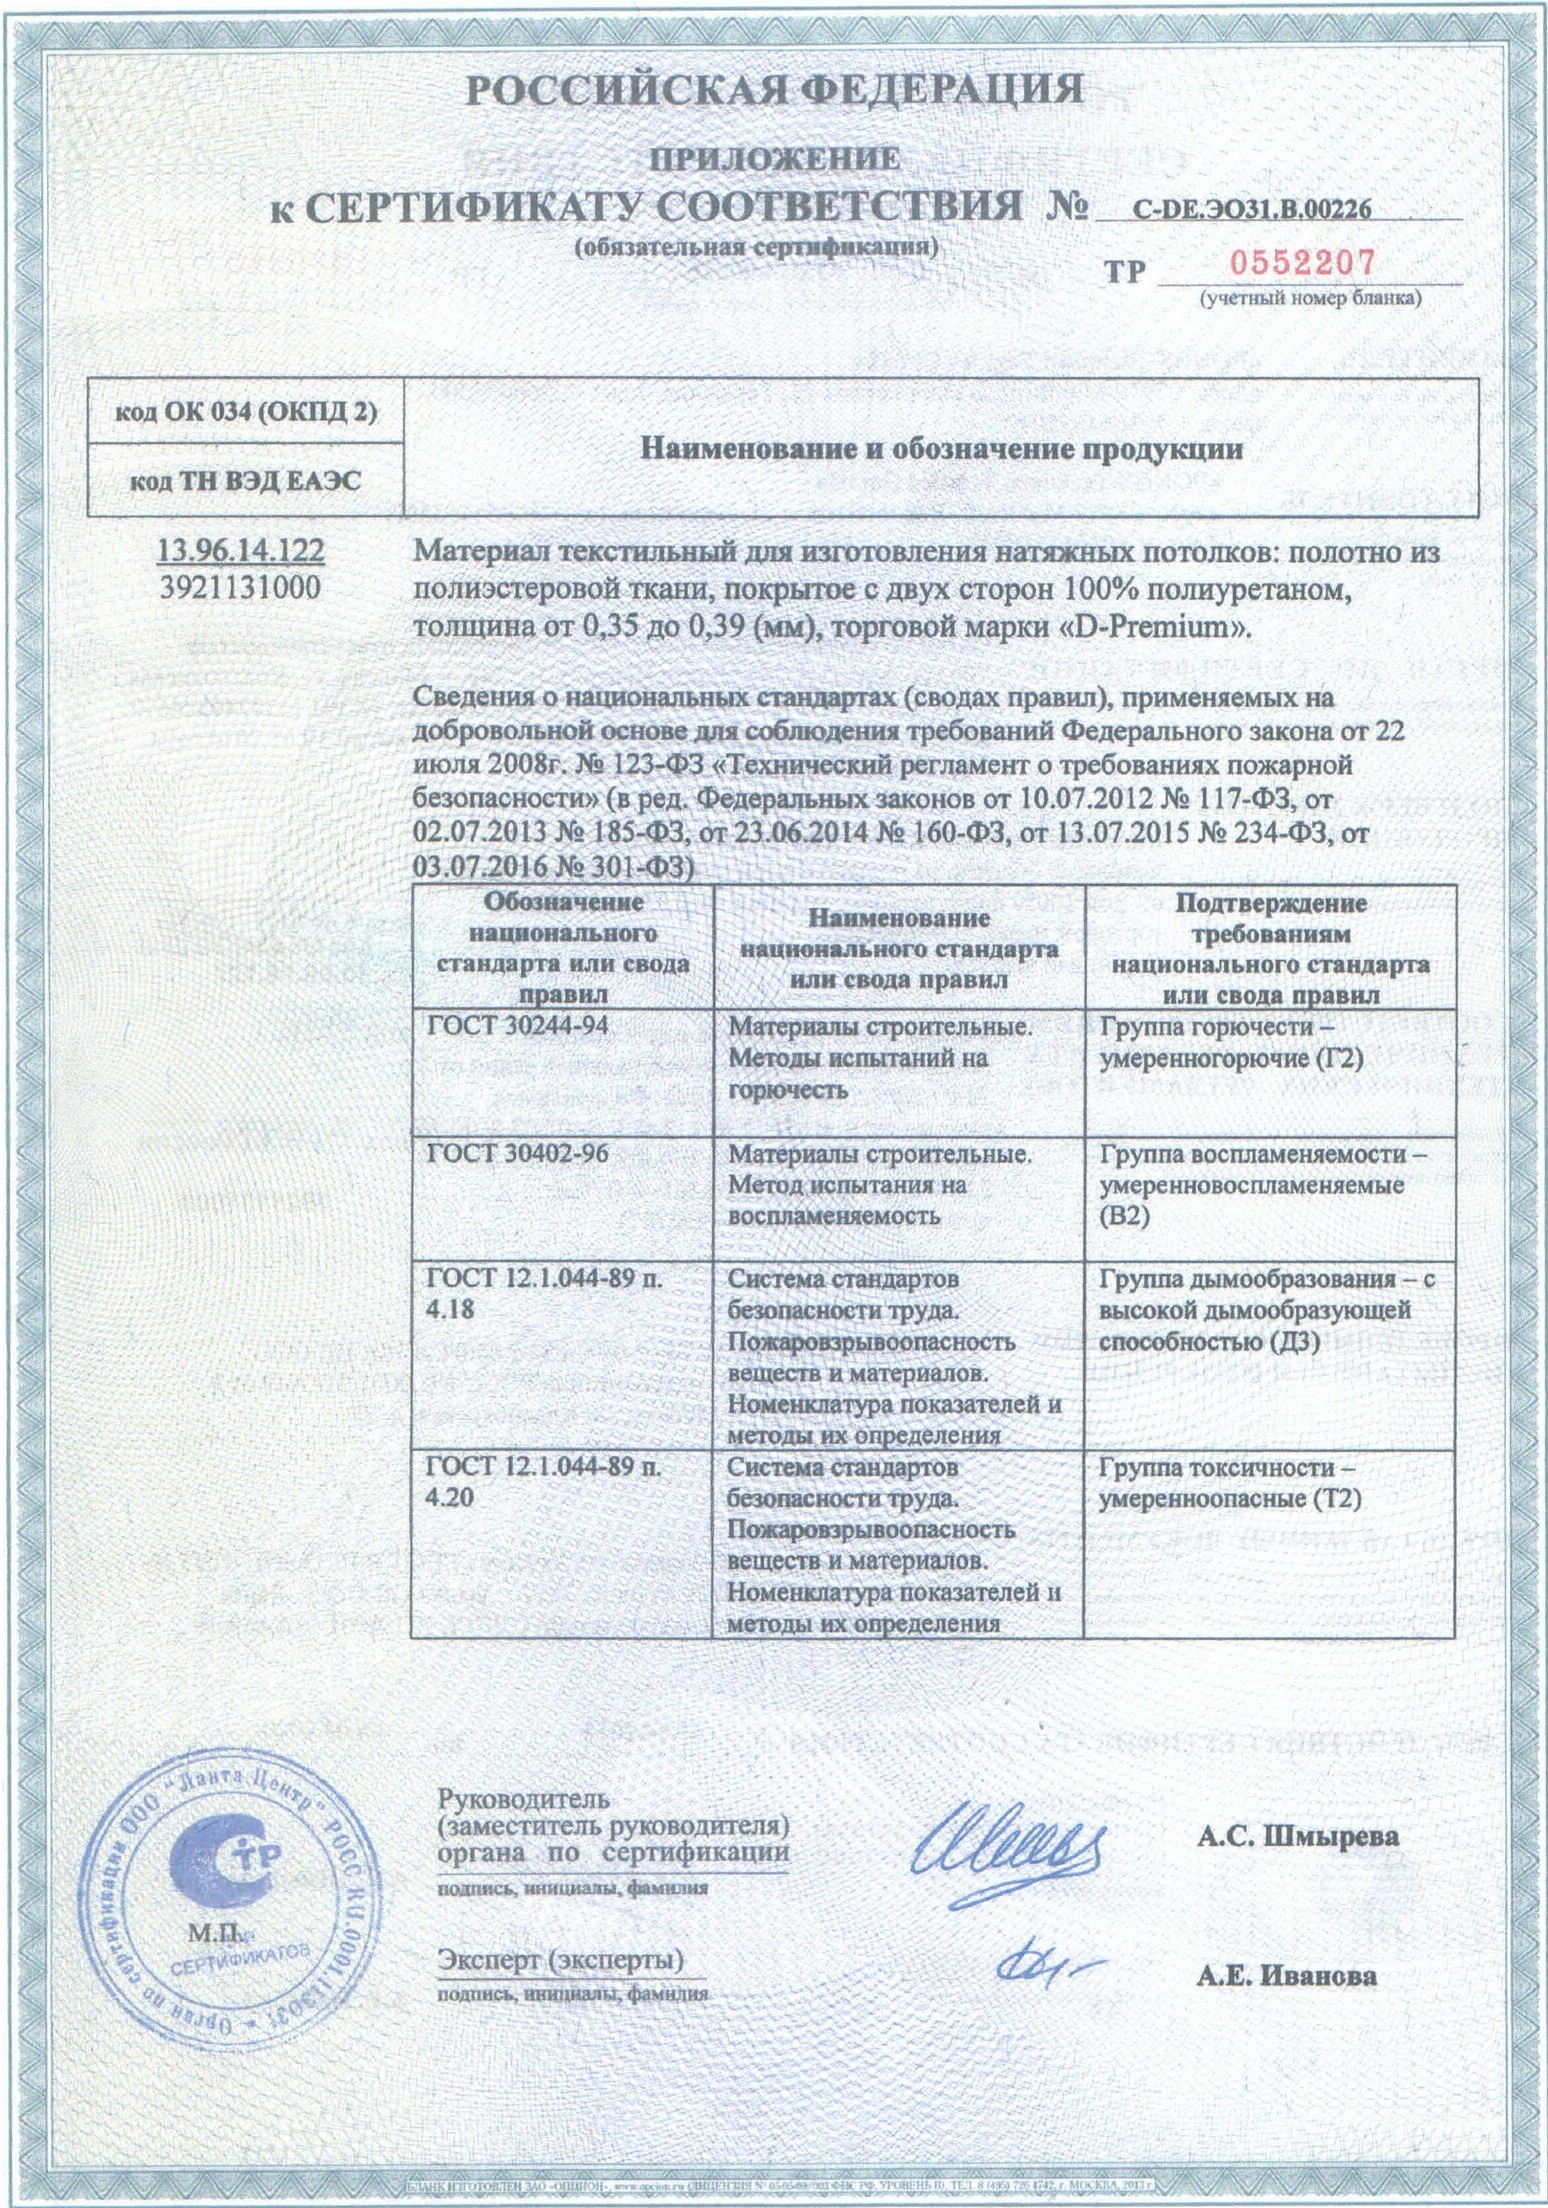 Приложение к сертификату соответствия на потолки Дескор